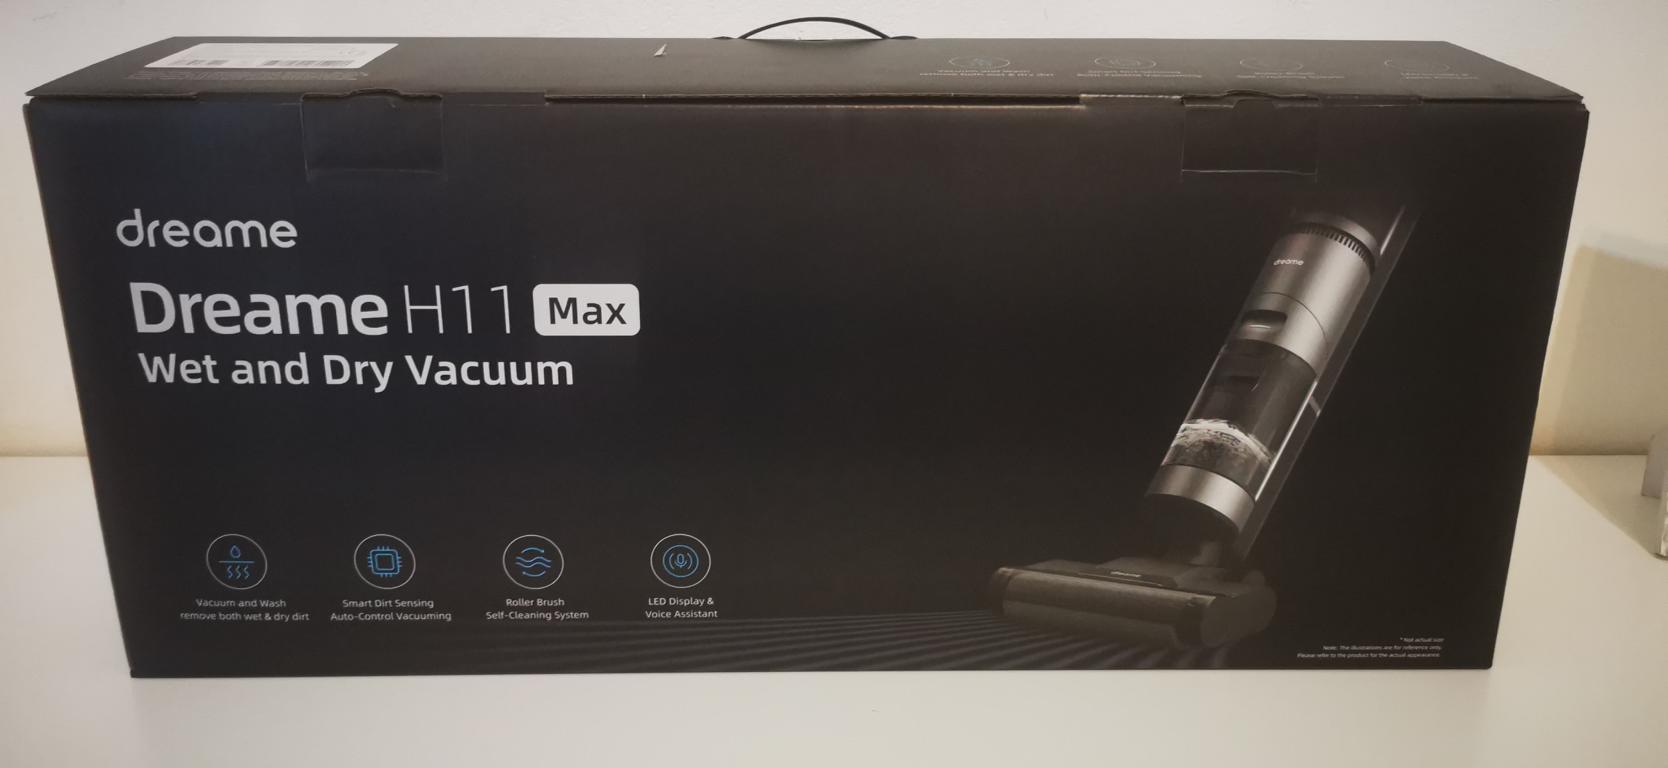 Dreame H11 Max Test Erfahrungen Dreame H11 Max: Test des neuen intelligenten Wischsaugers!